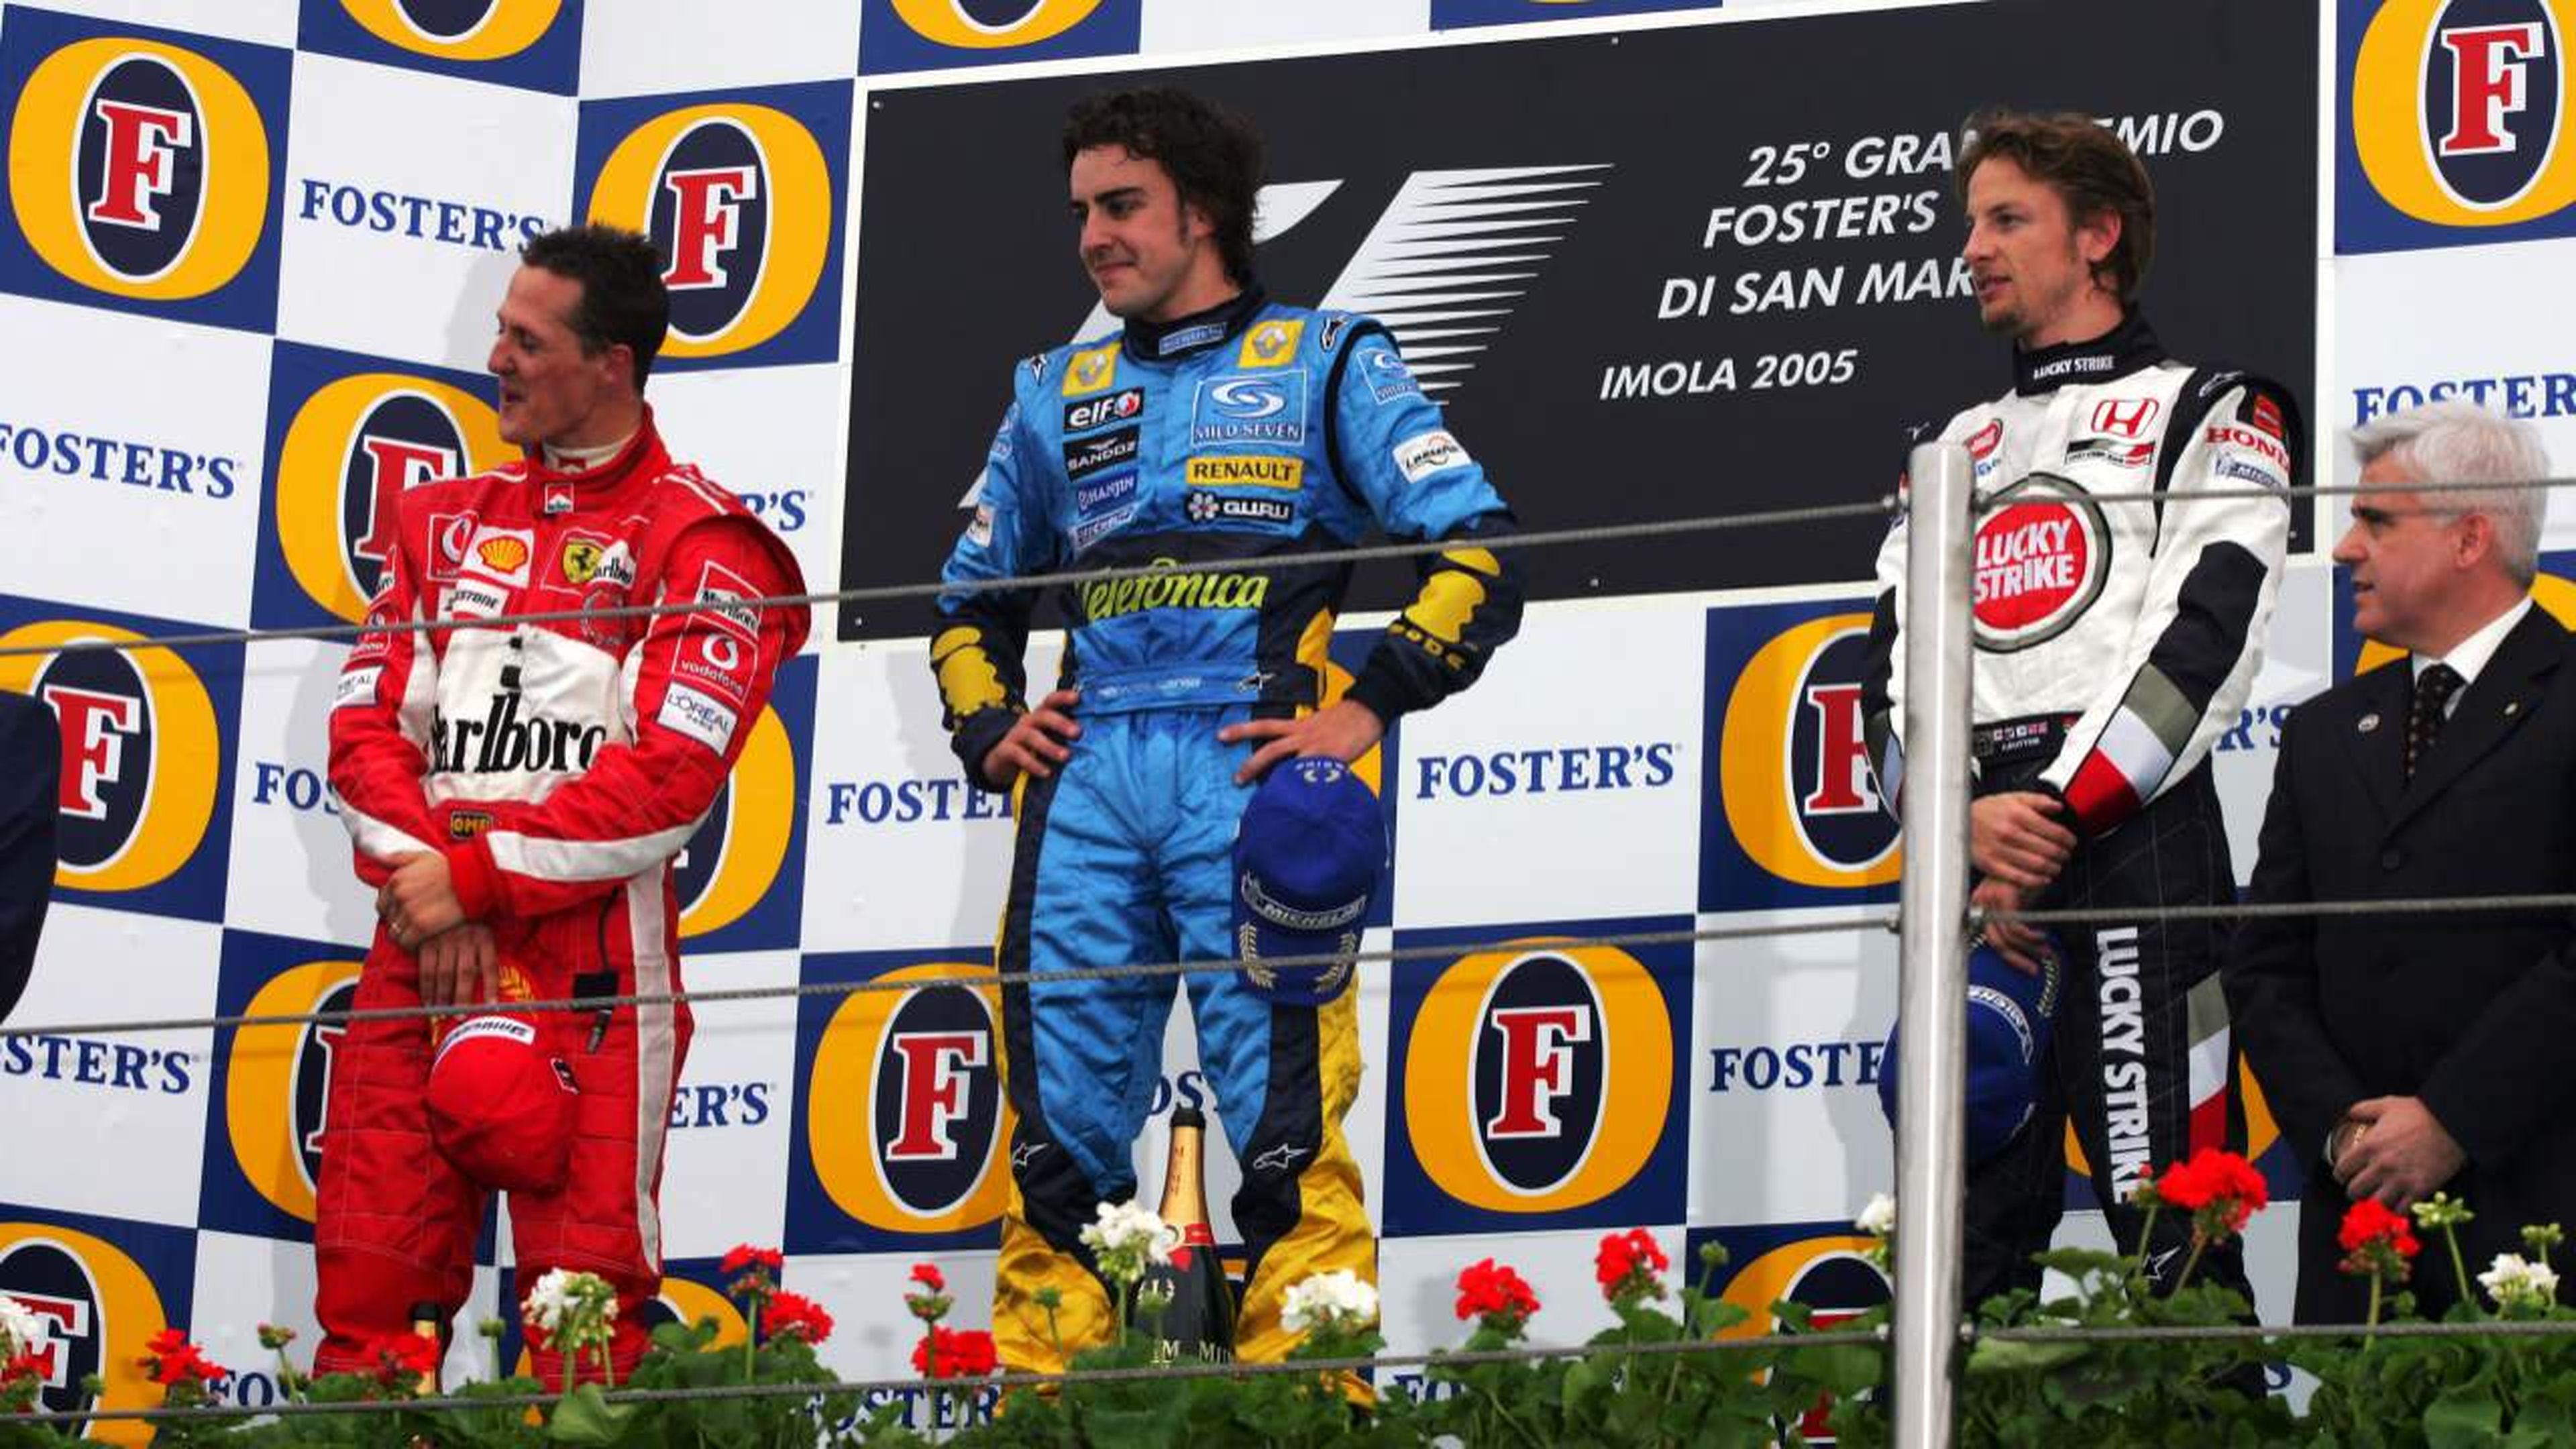 Alonso y Schumacher en el GP San marino 2005